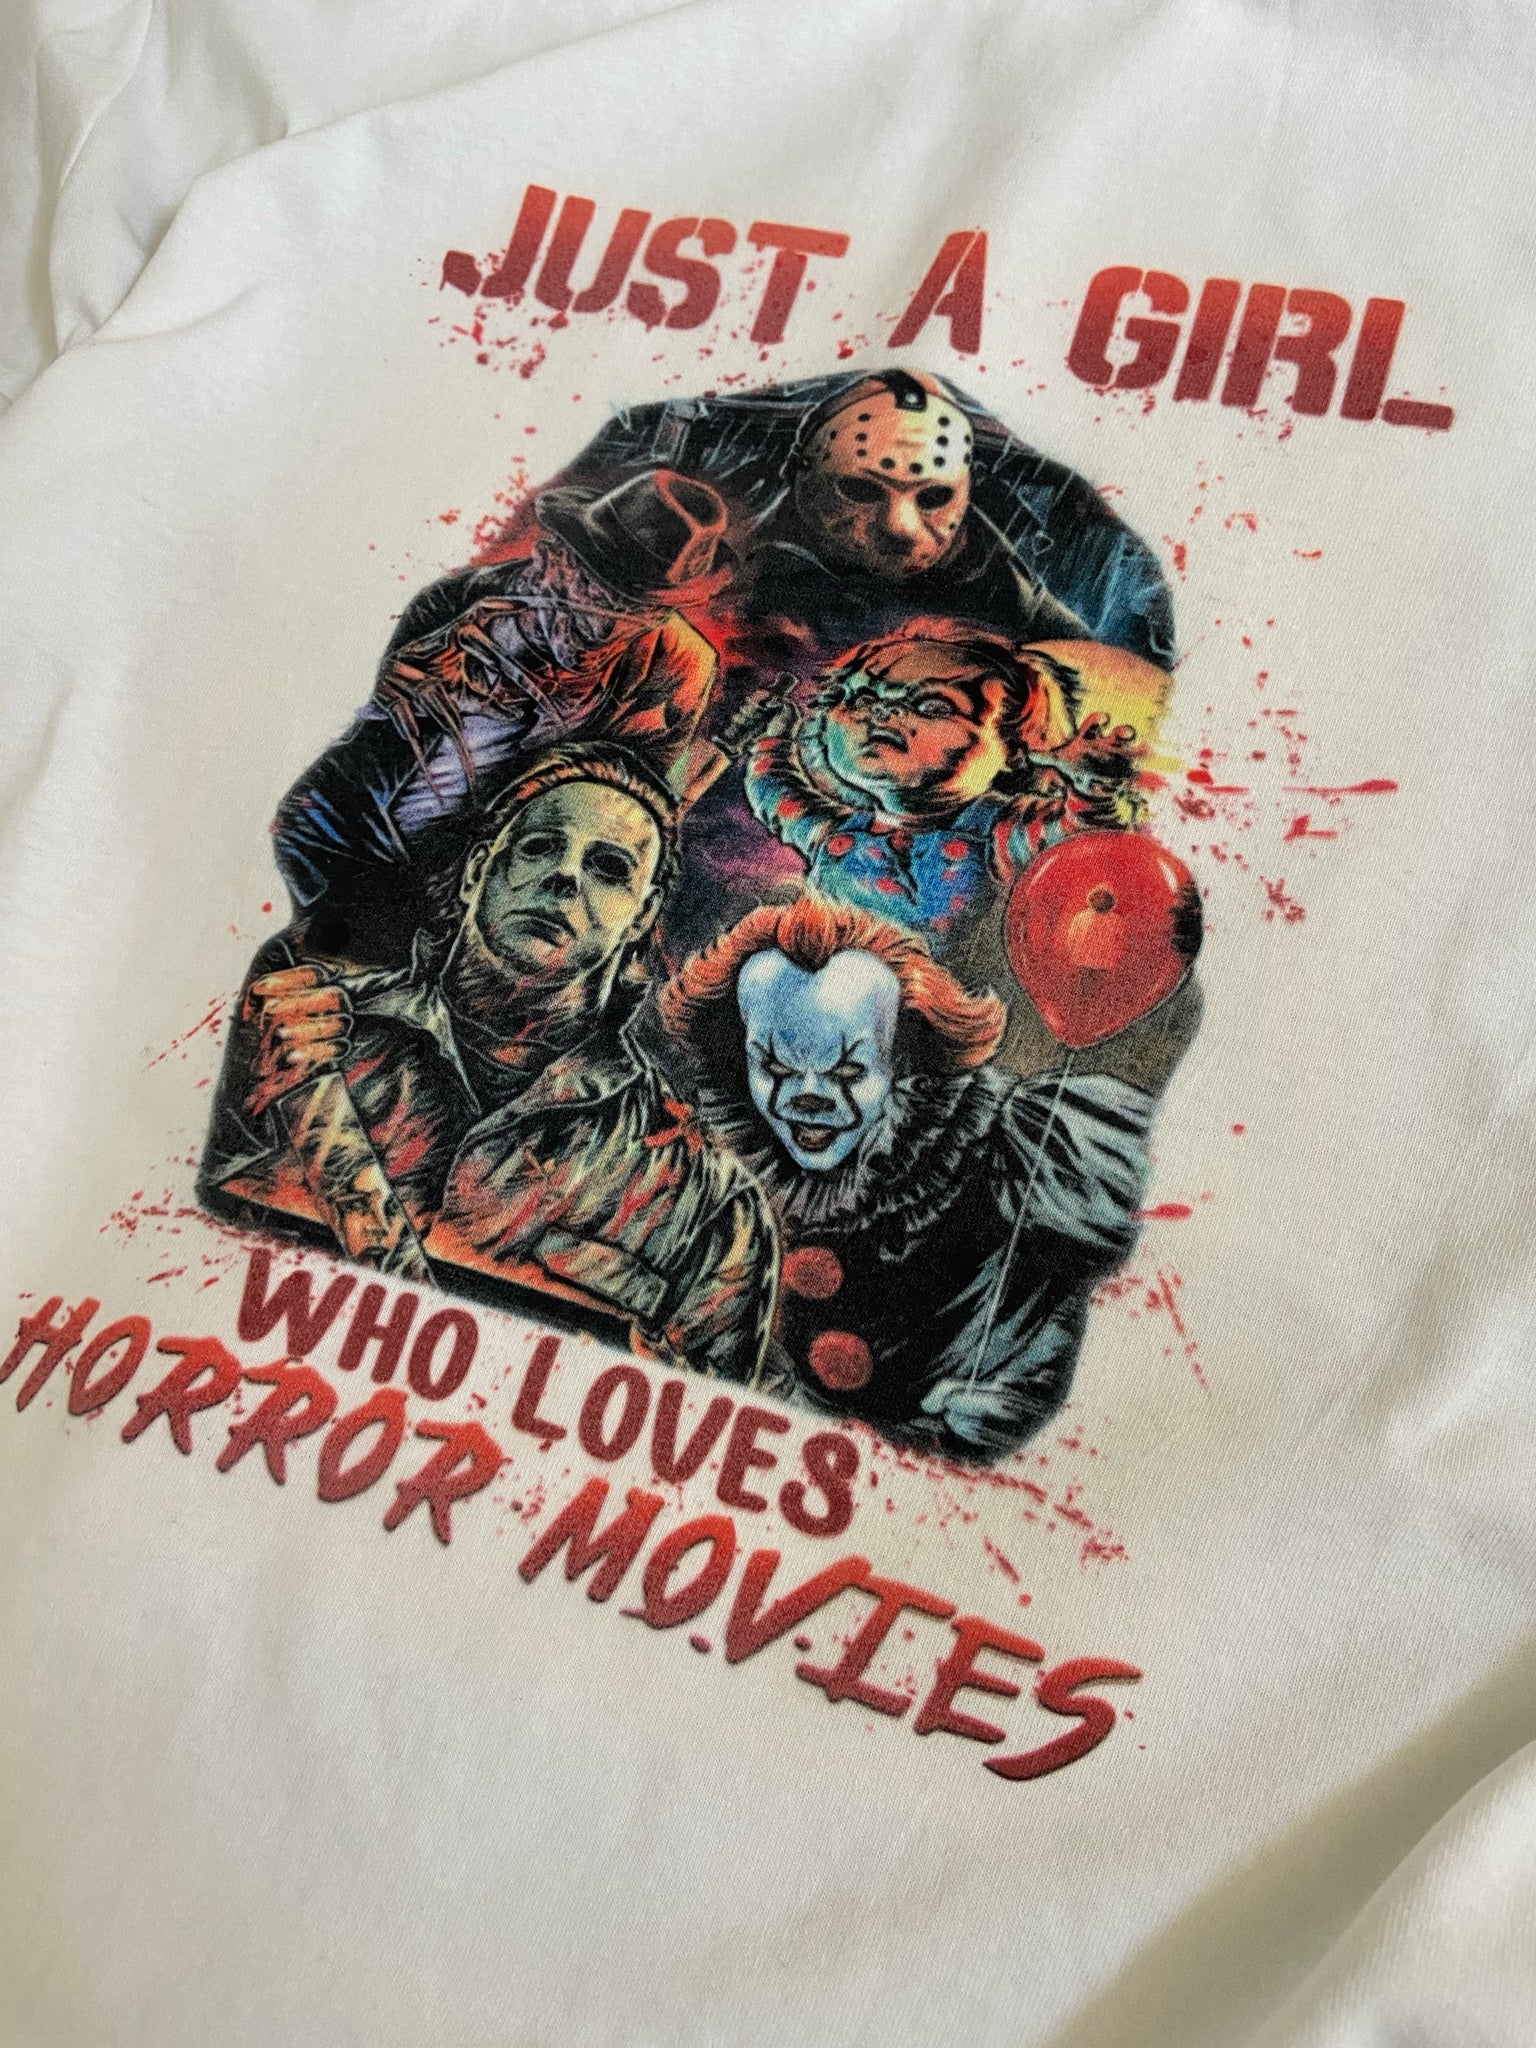 Girl Loves Horror Movies